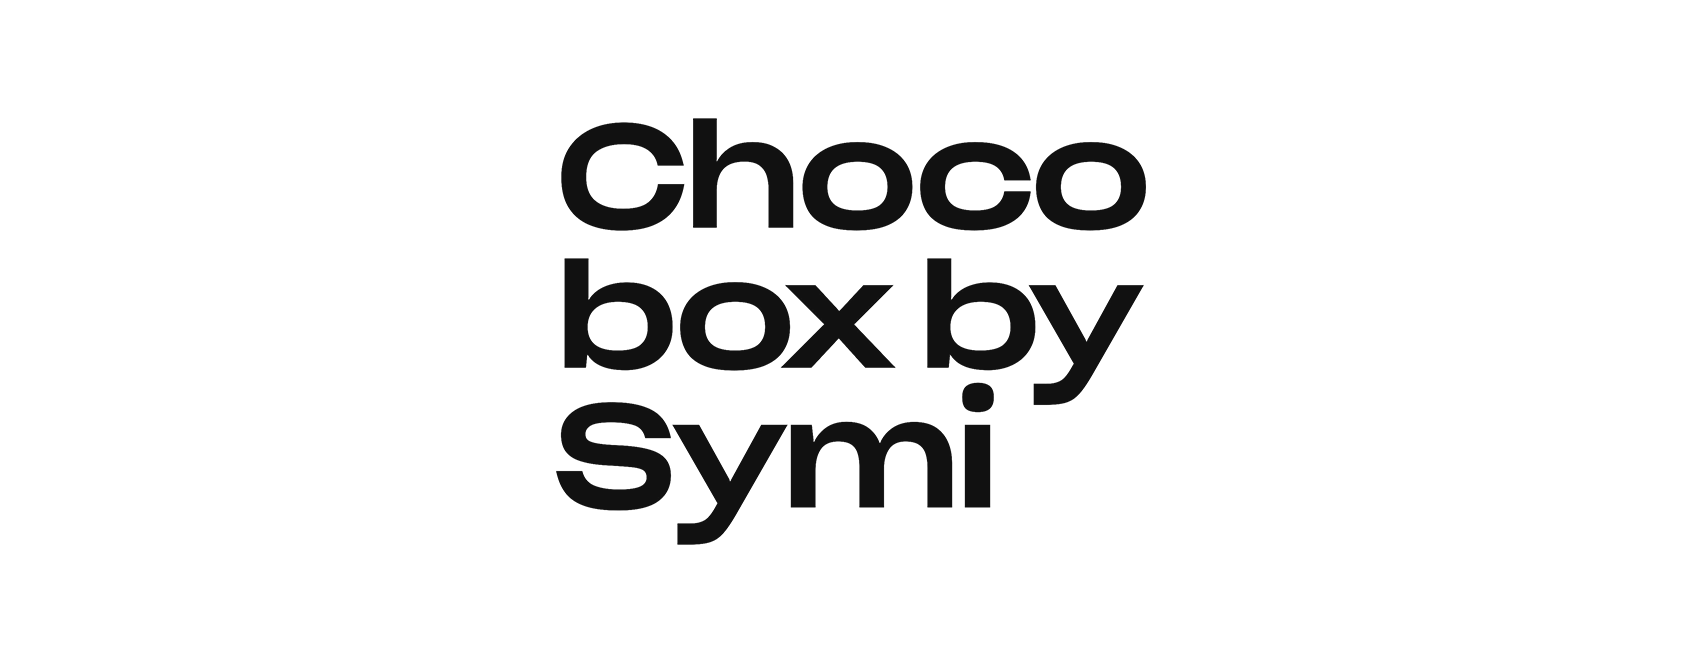 Choco-box-by-symi